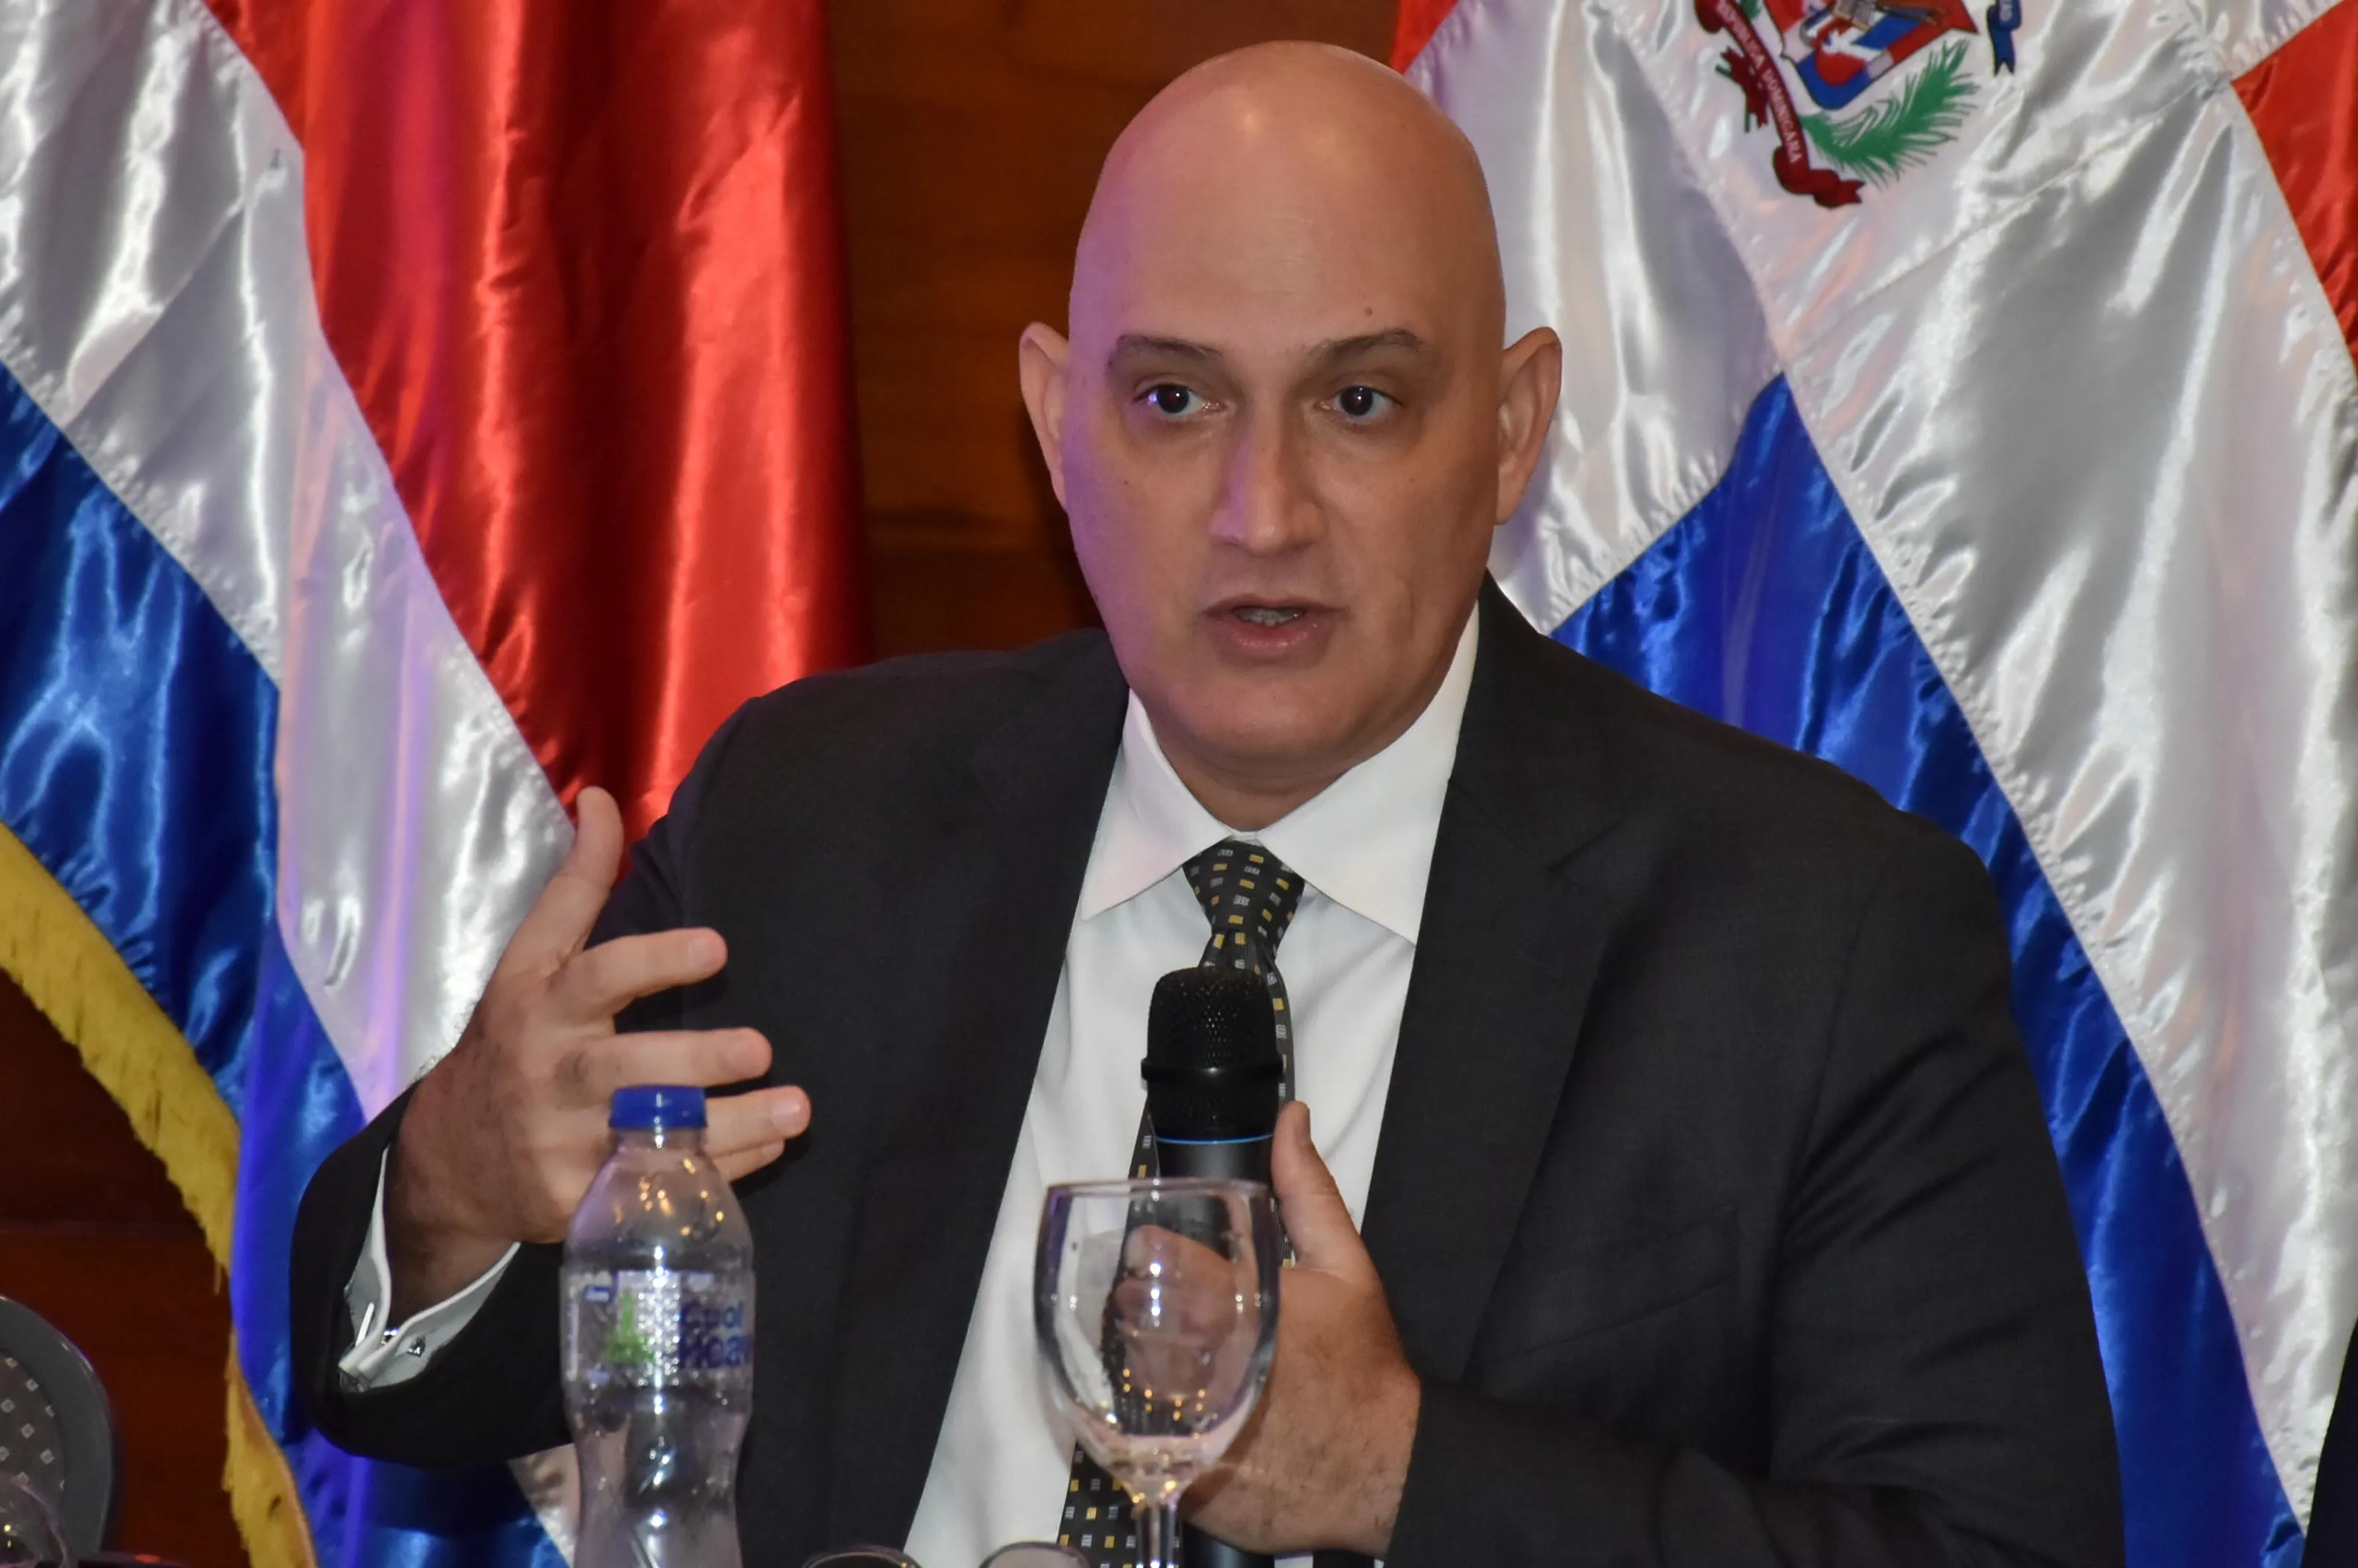 República Dominicana, Panamá y Paraguay se proyectan como los países con mayor crecimiento económico en 2023